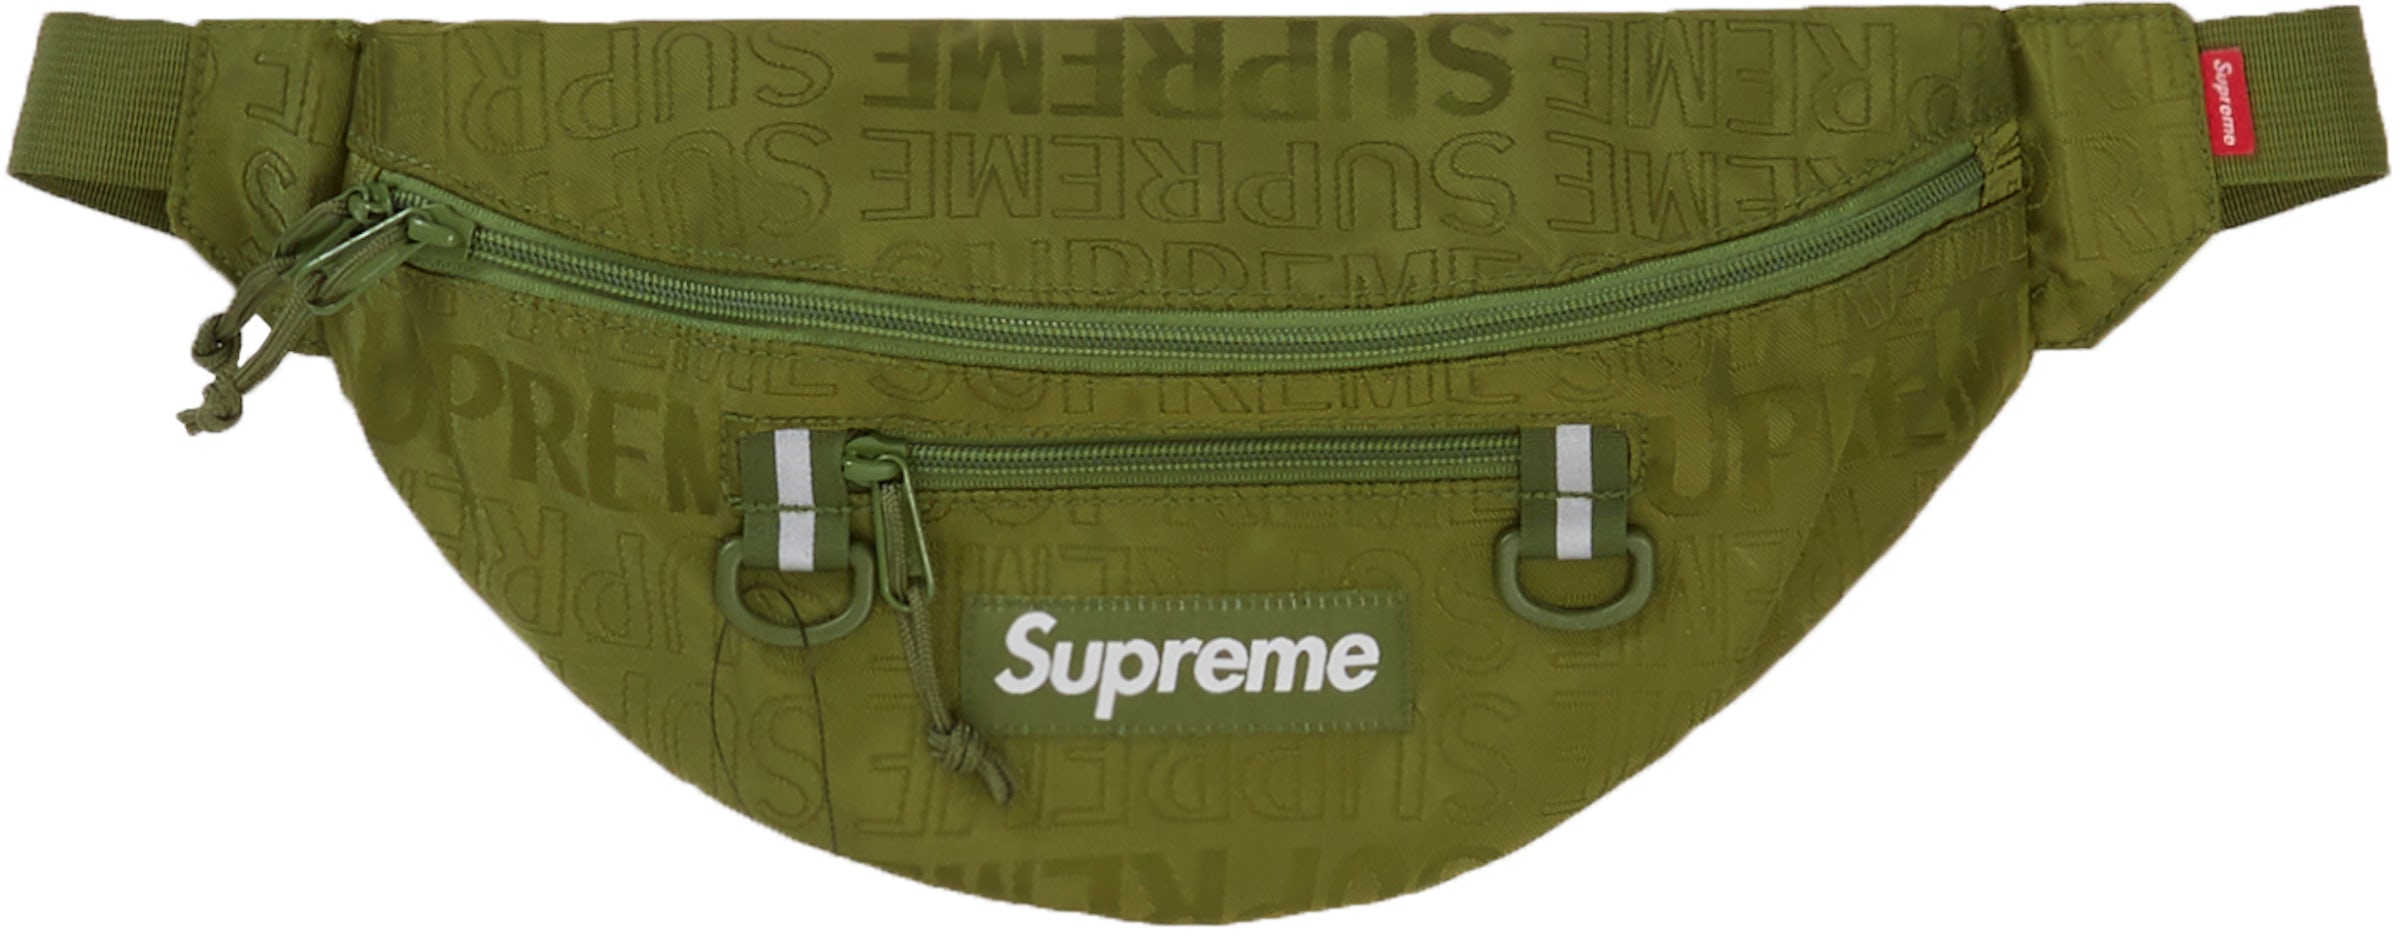 Supreme 19SS 46Th Shoulder Bag Tide Brand Waist Bag Shoulder Bag